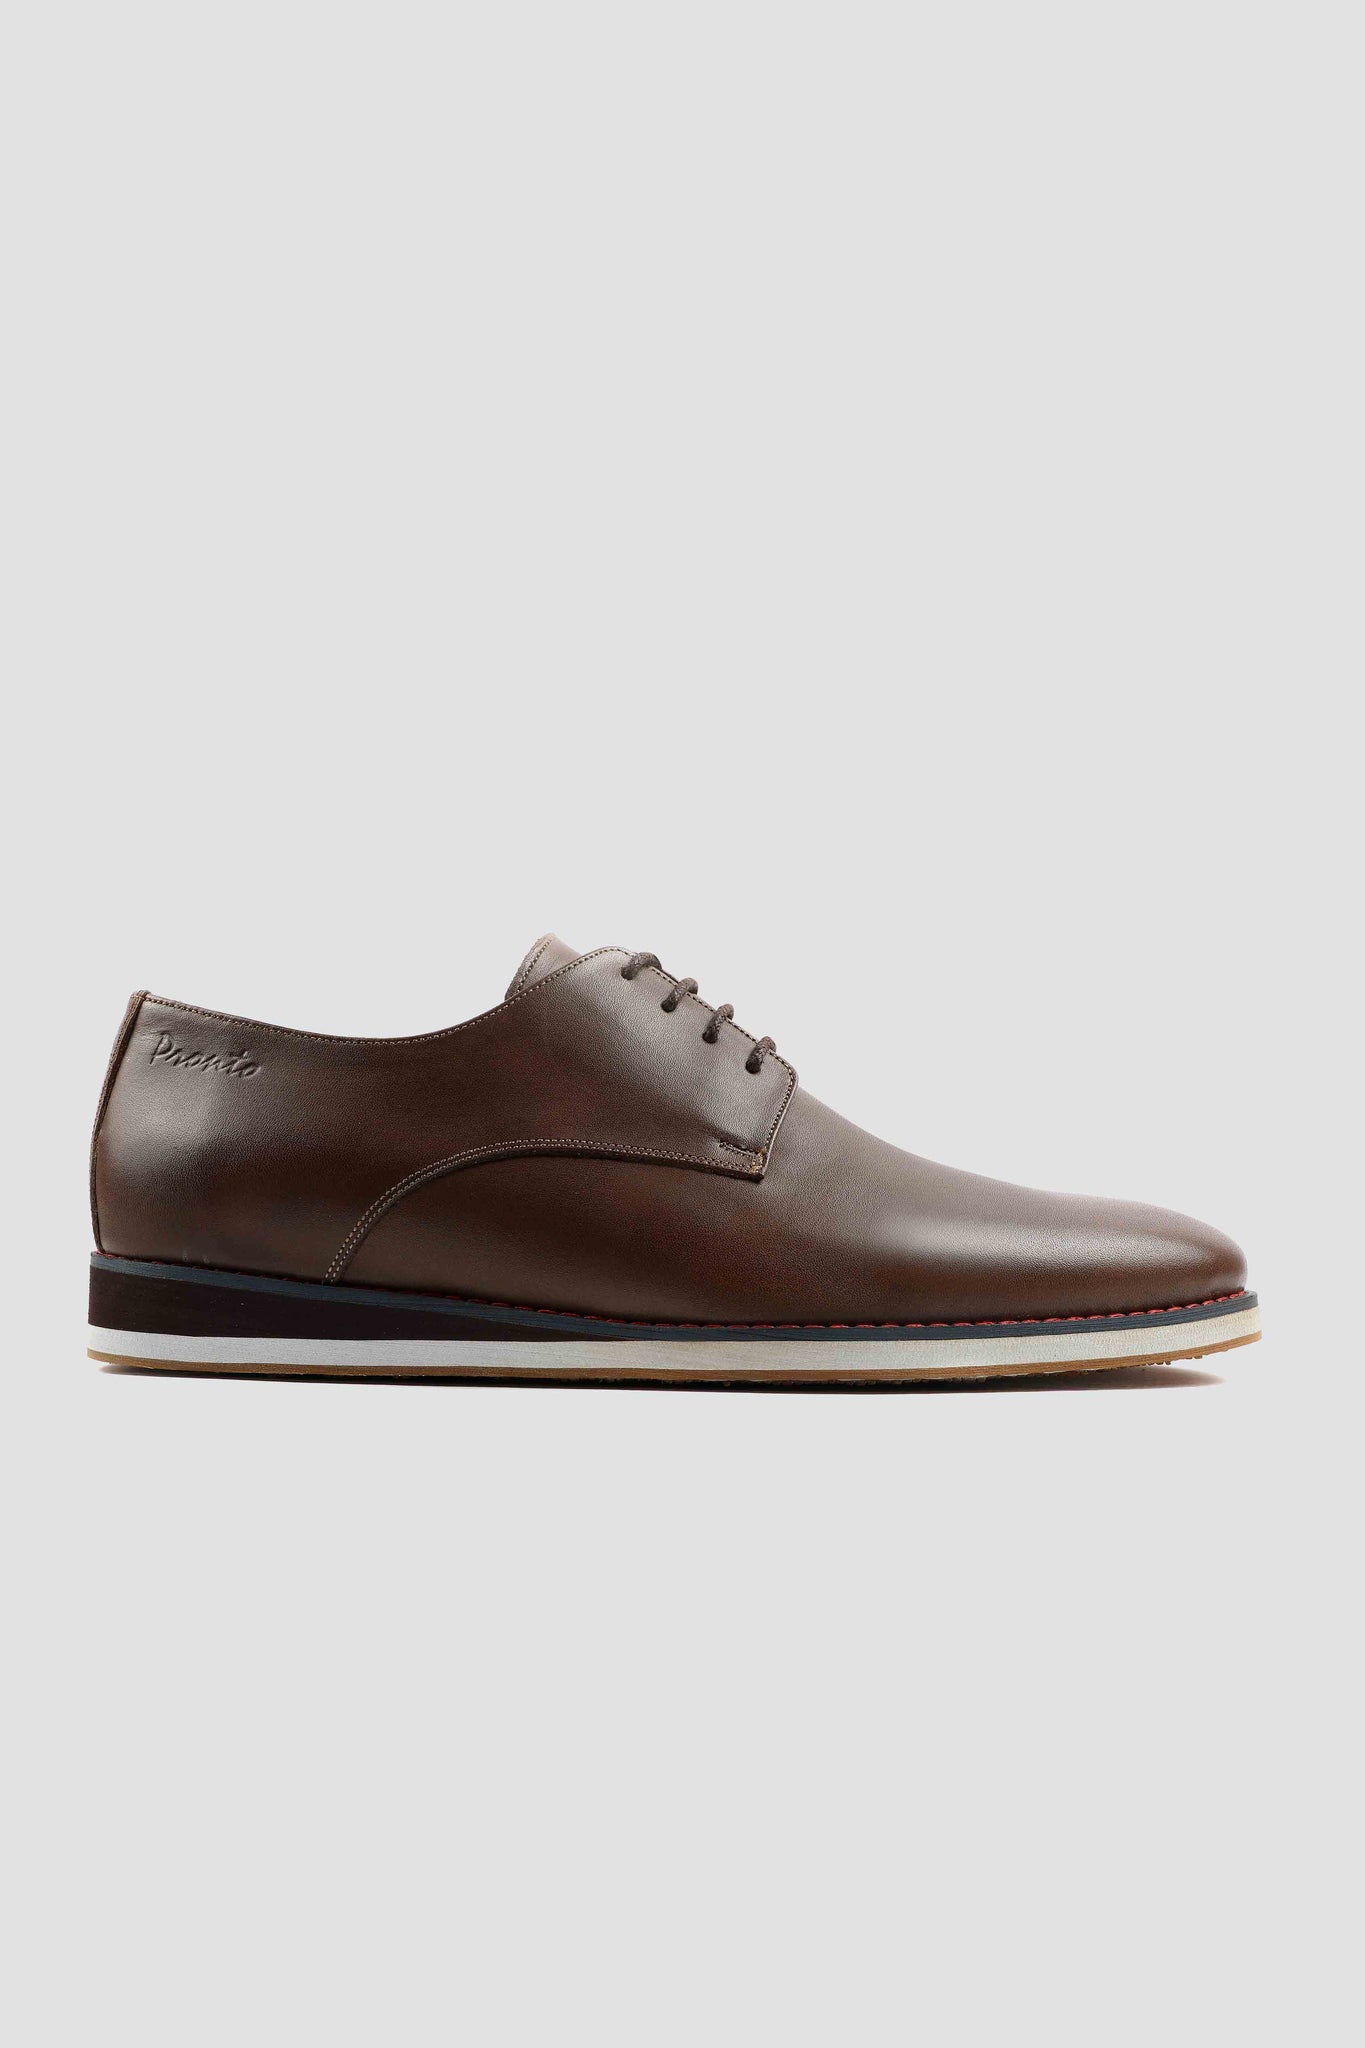 Men's shoes - leather shoes - pronto shoes